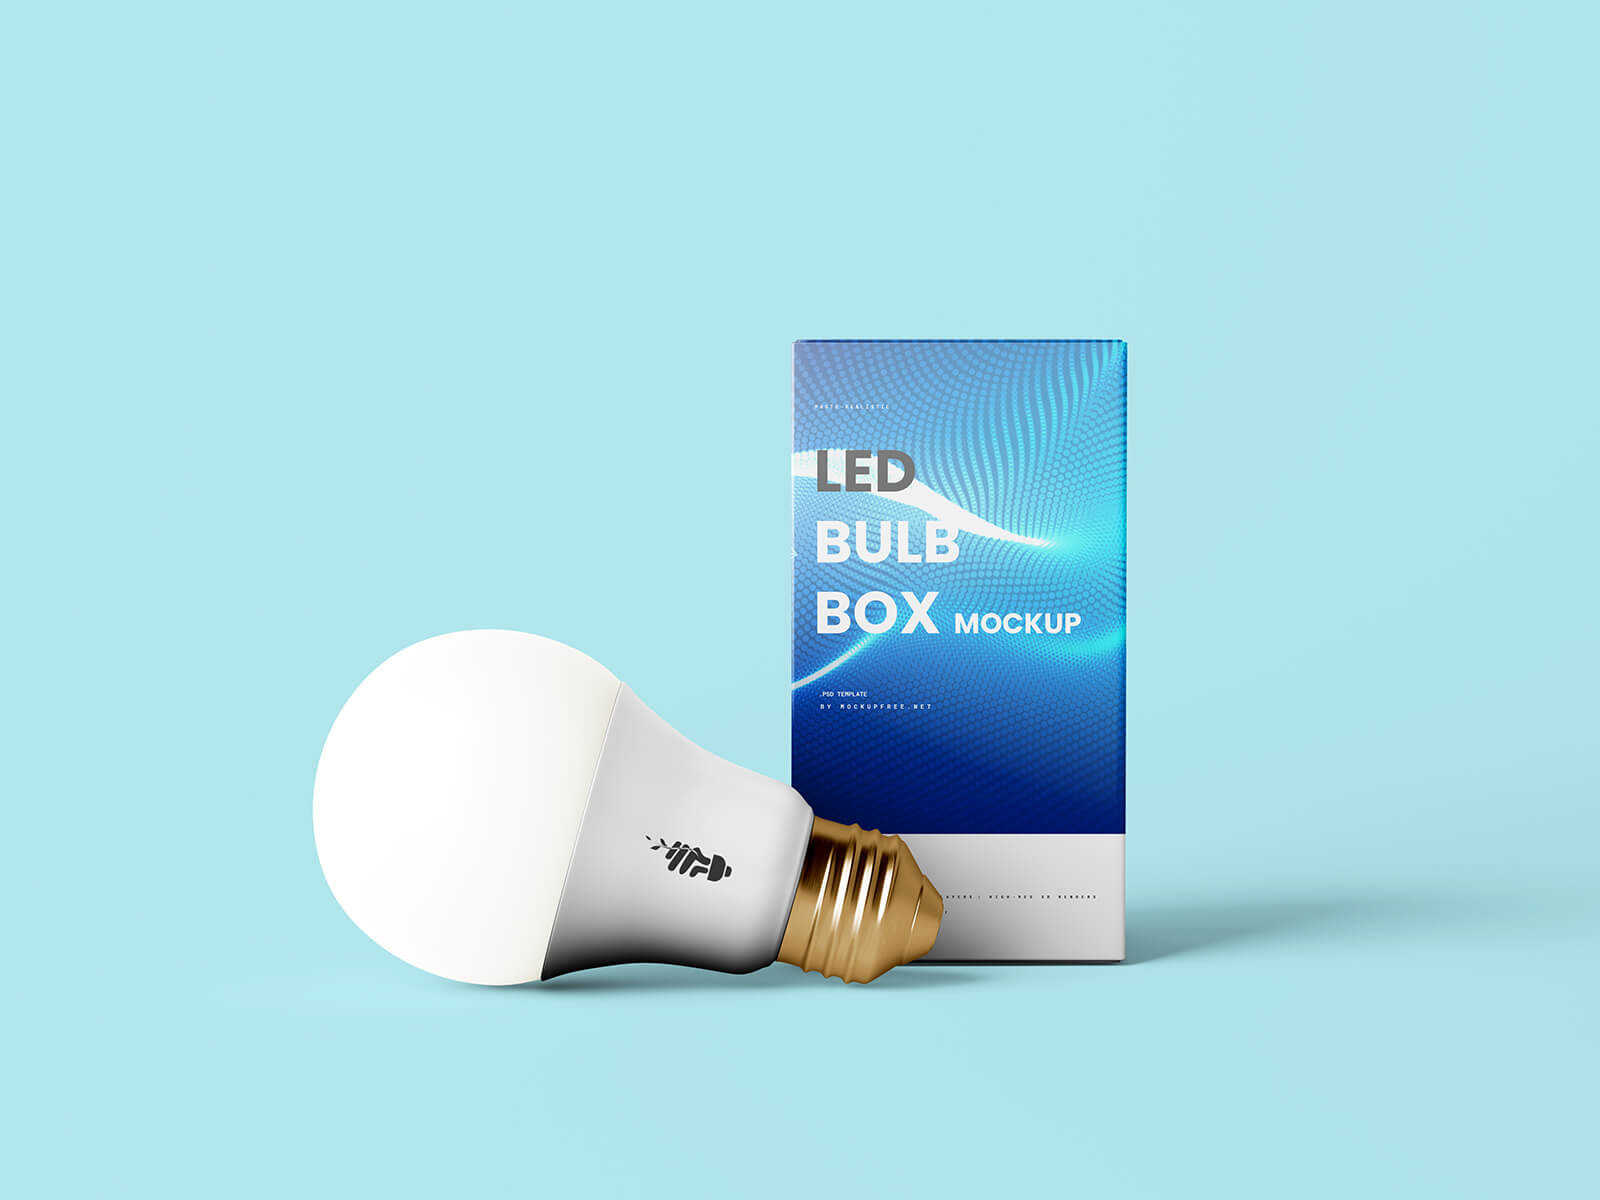 Free LED Light Bulb & Box Mockup PSD